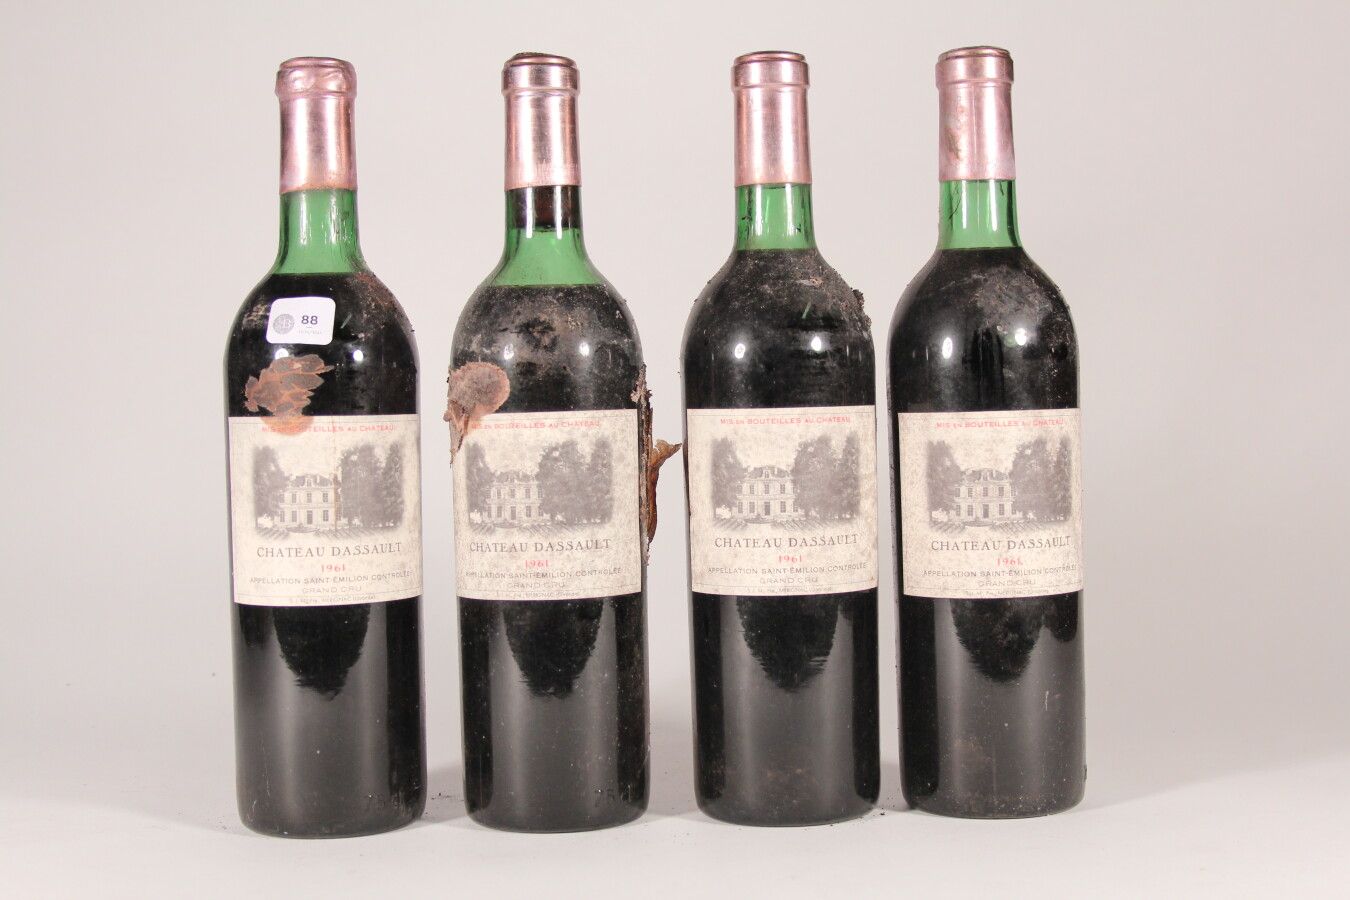 Null 1961 - Château Dassault

Saint-Émilion - 4 bottles (including 1 fair)